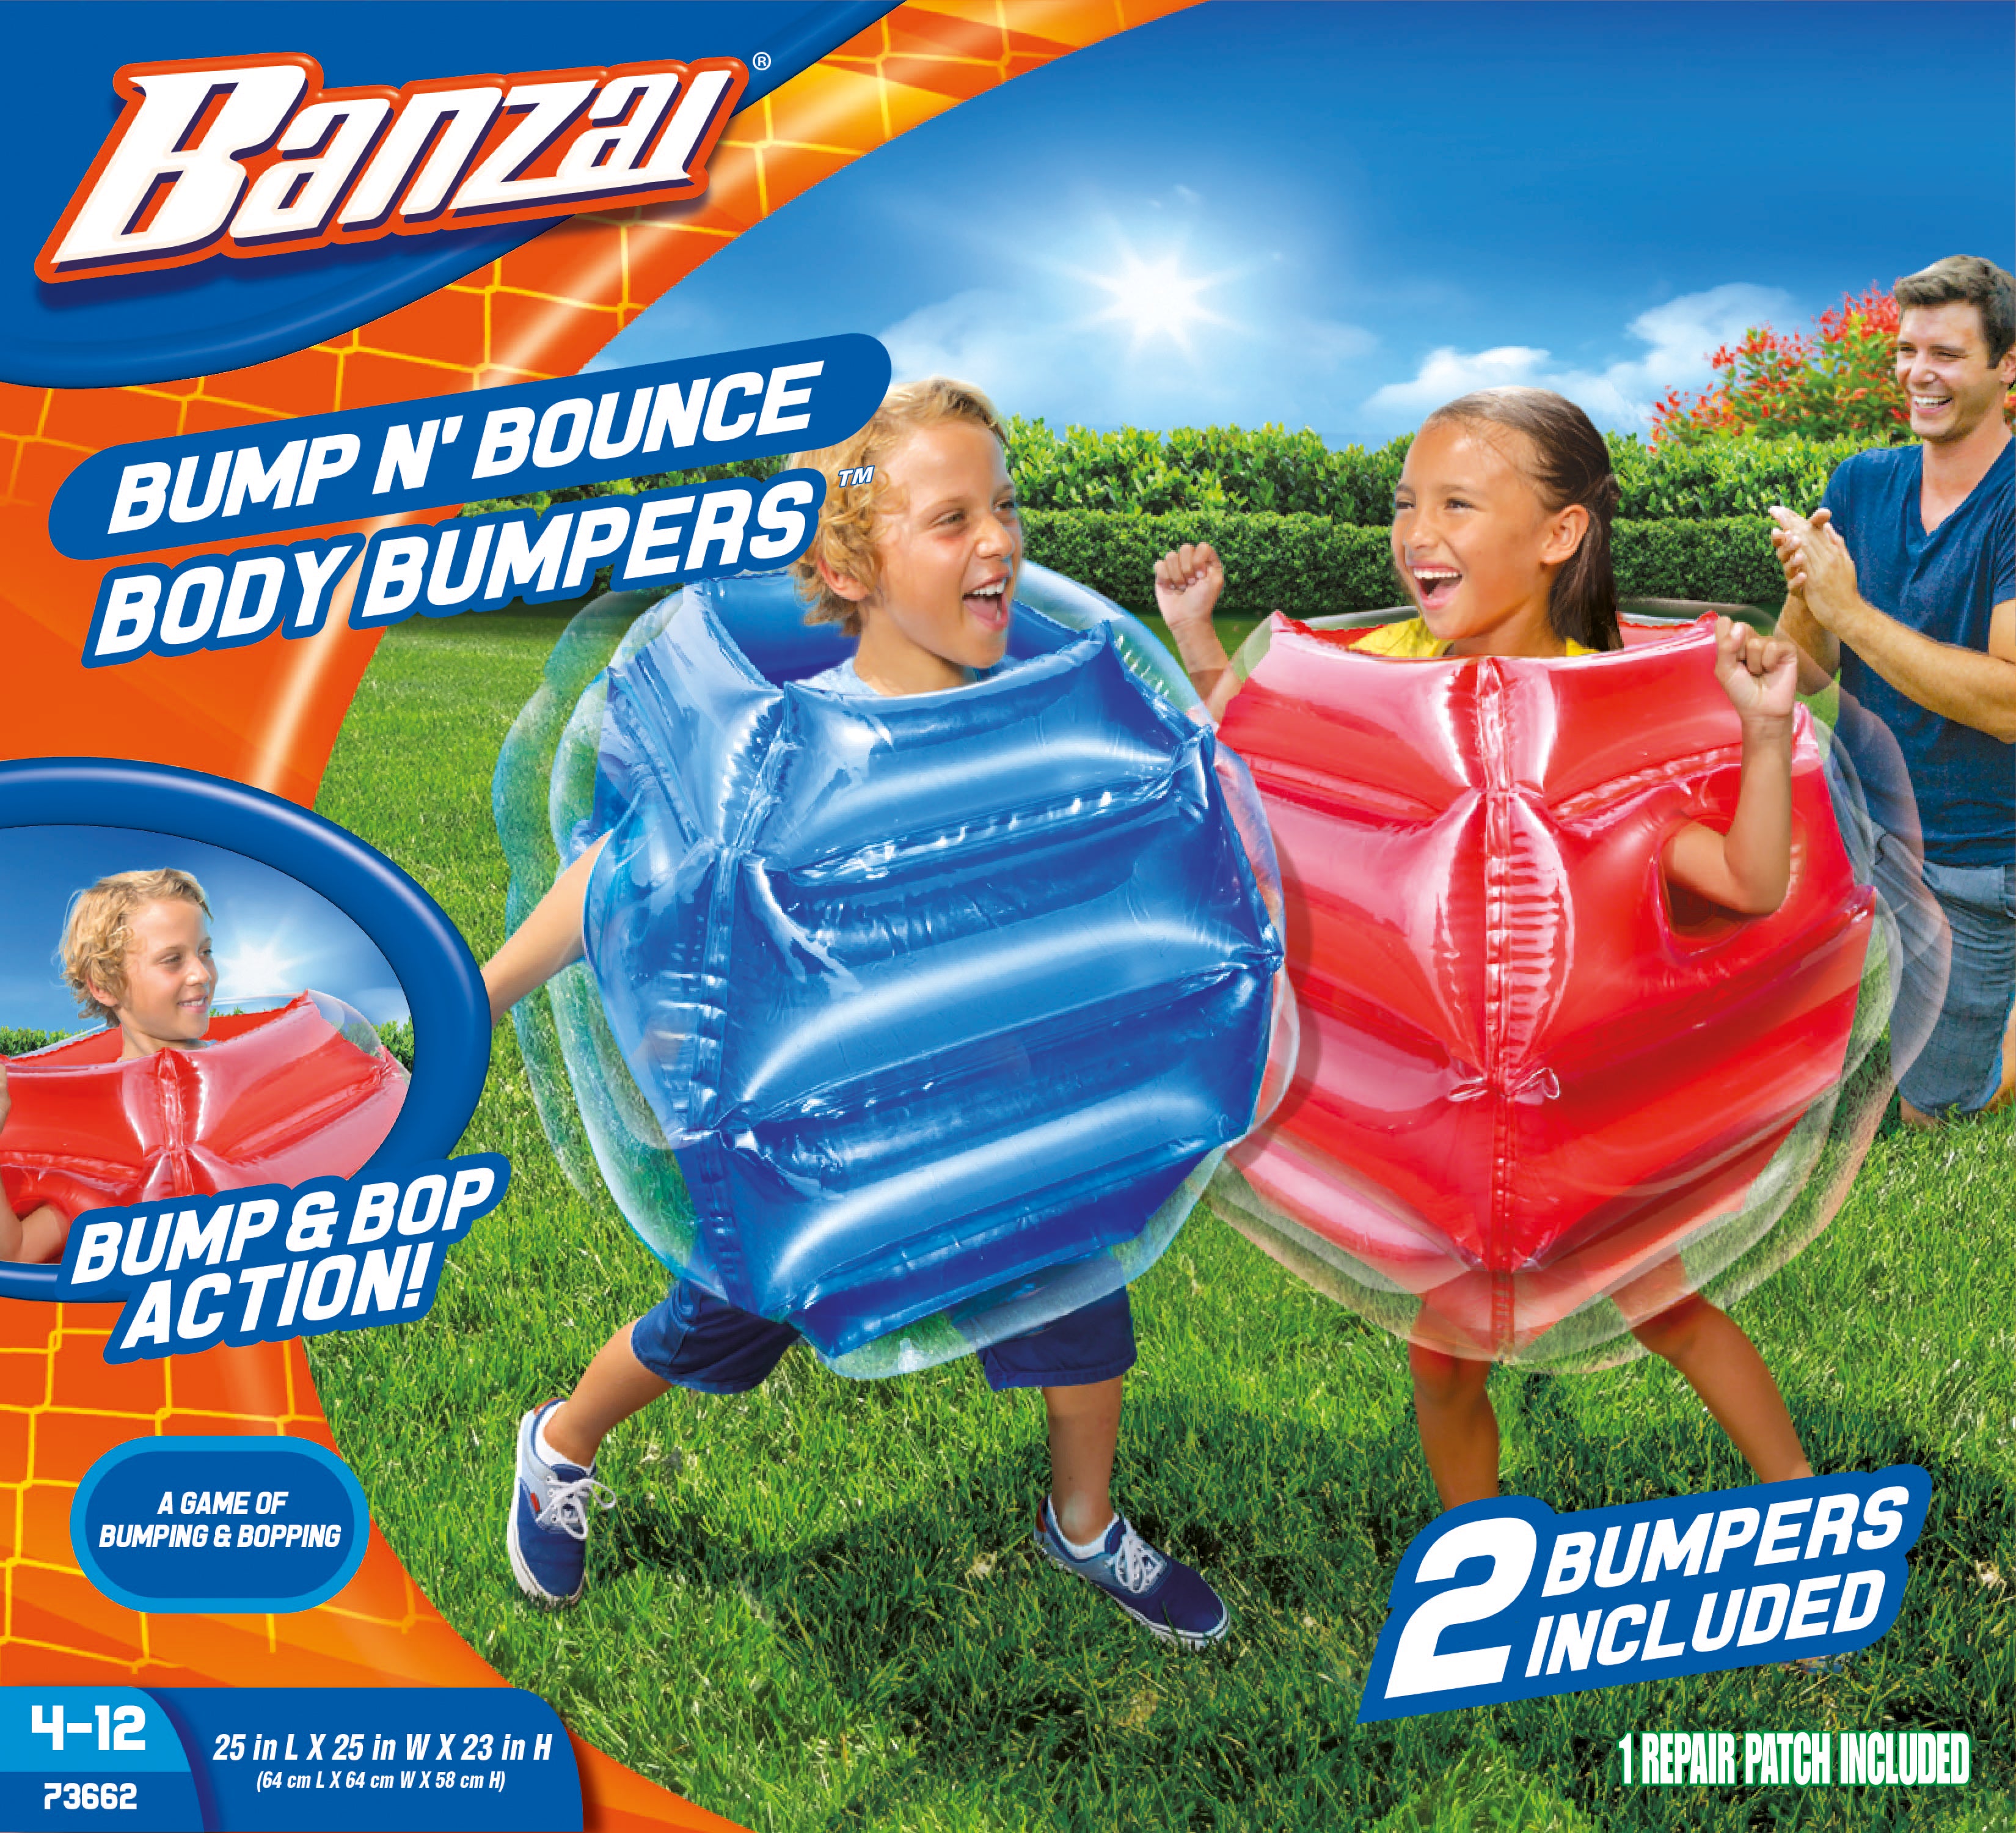 Banzai Bump N’ Bounce Body Bumpers